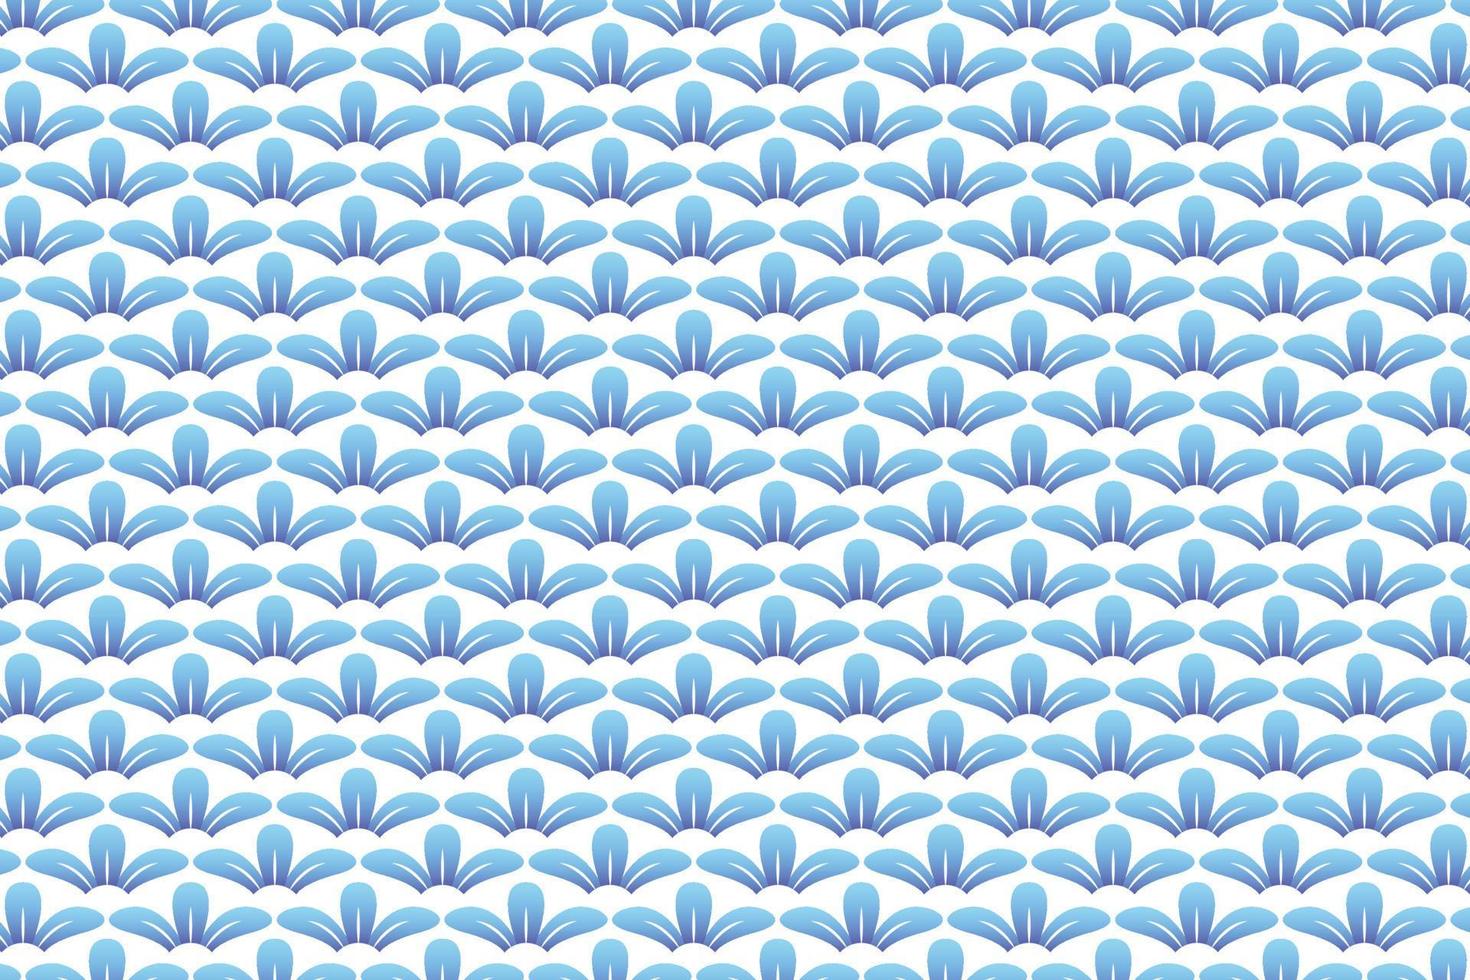 patrón de pétalos de flores azules sobre fondo blanco, patrón de porcelana, índigo abstracto vector